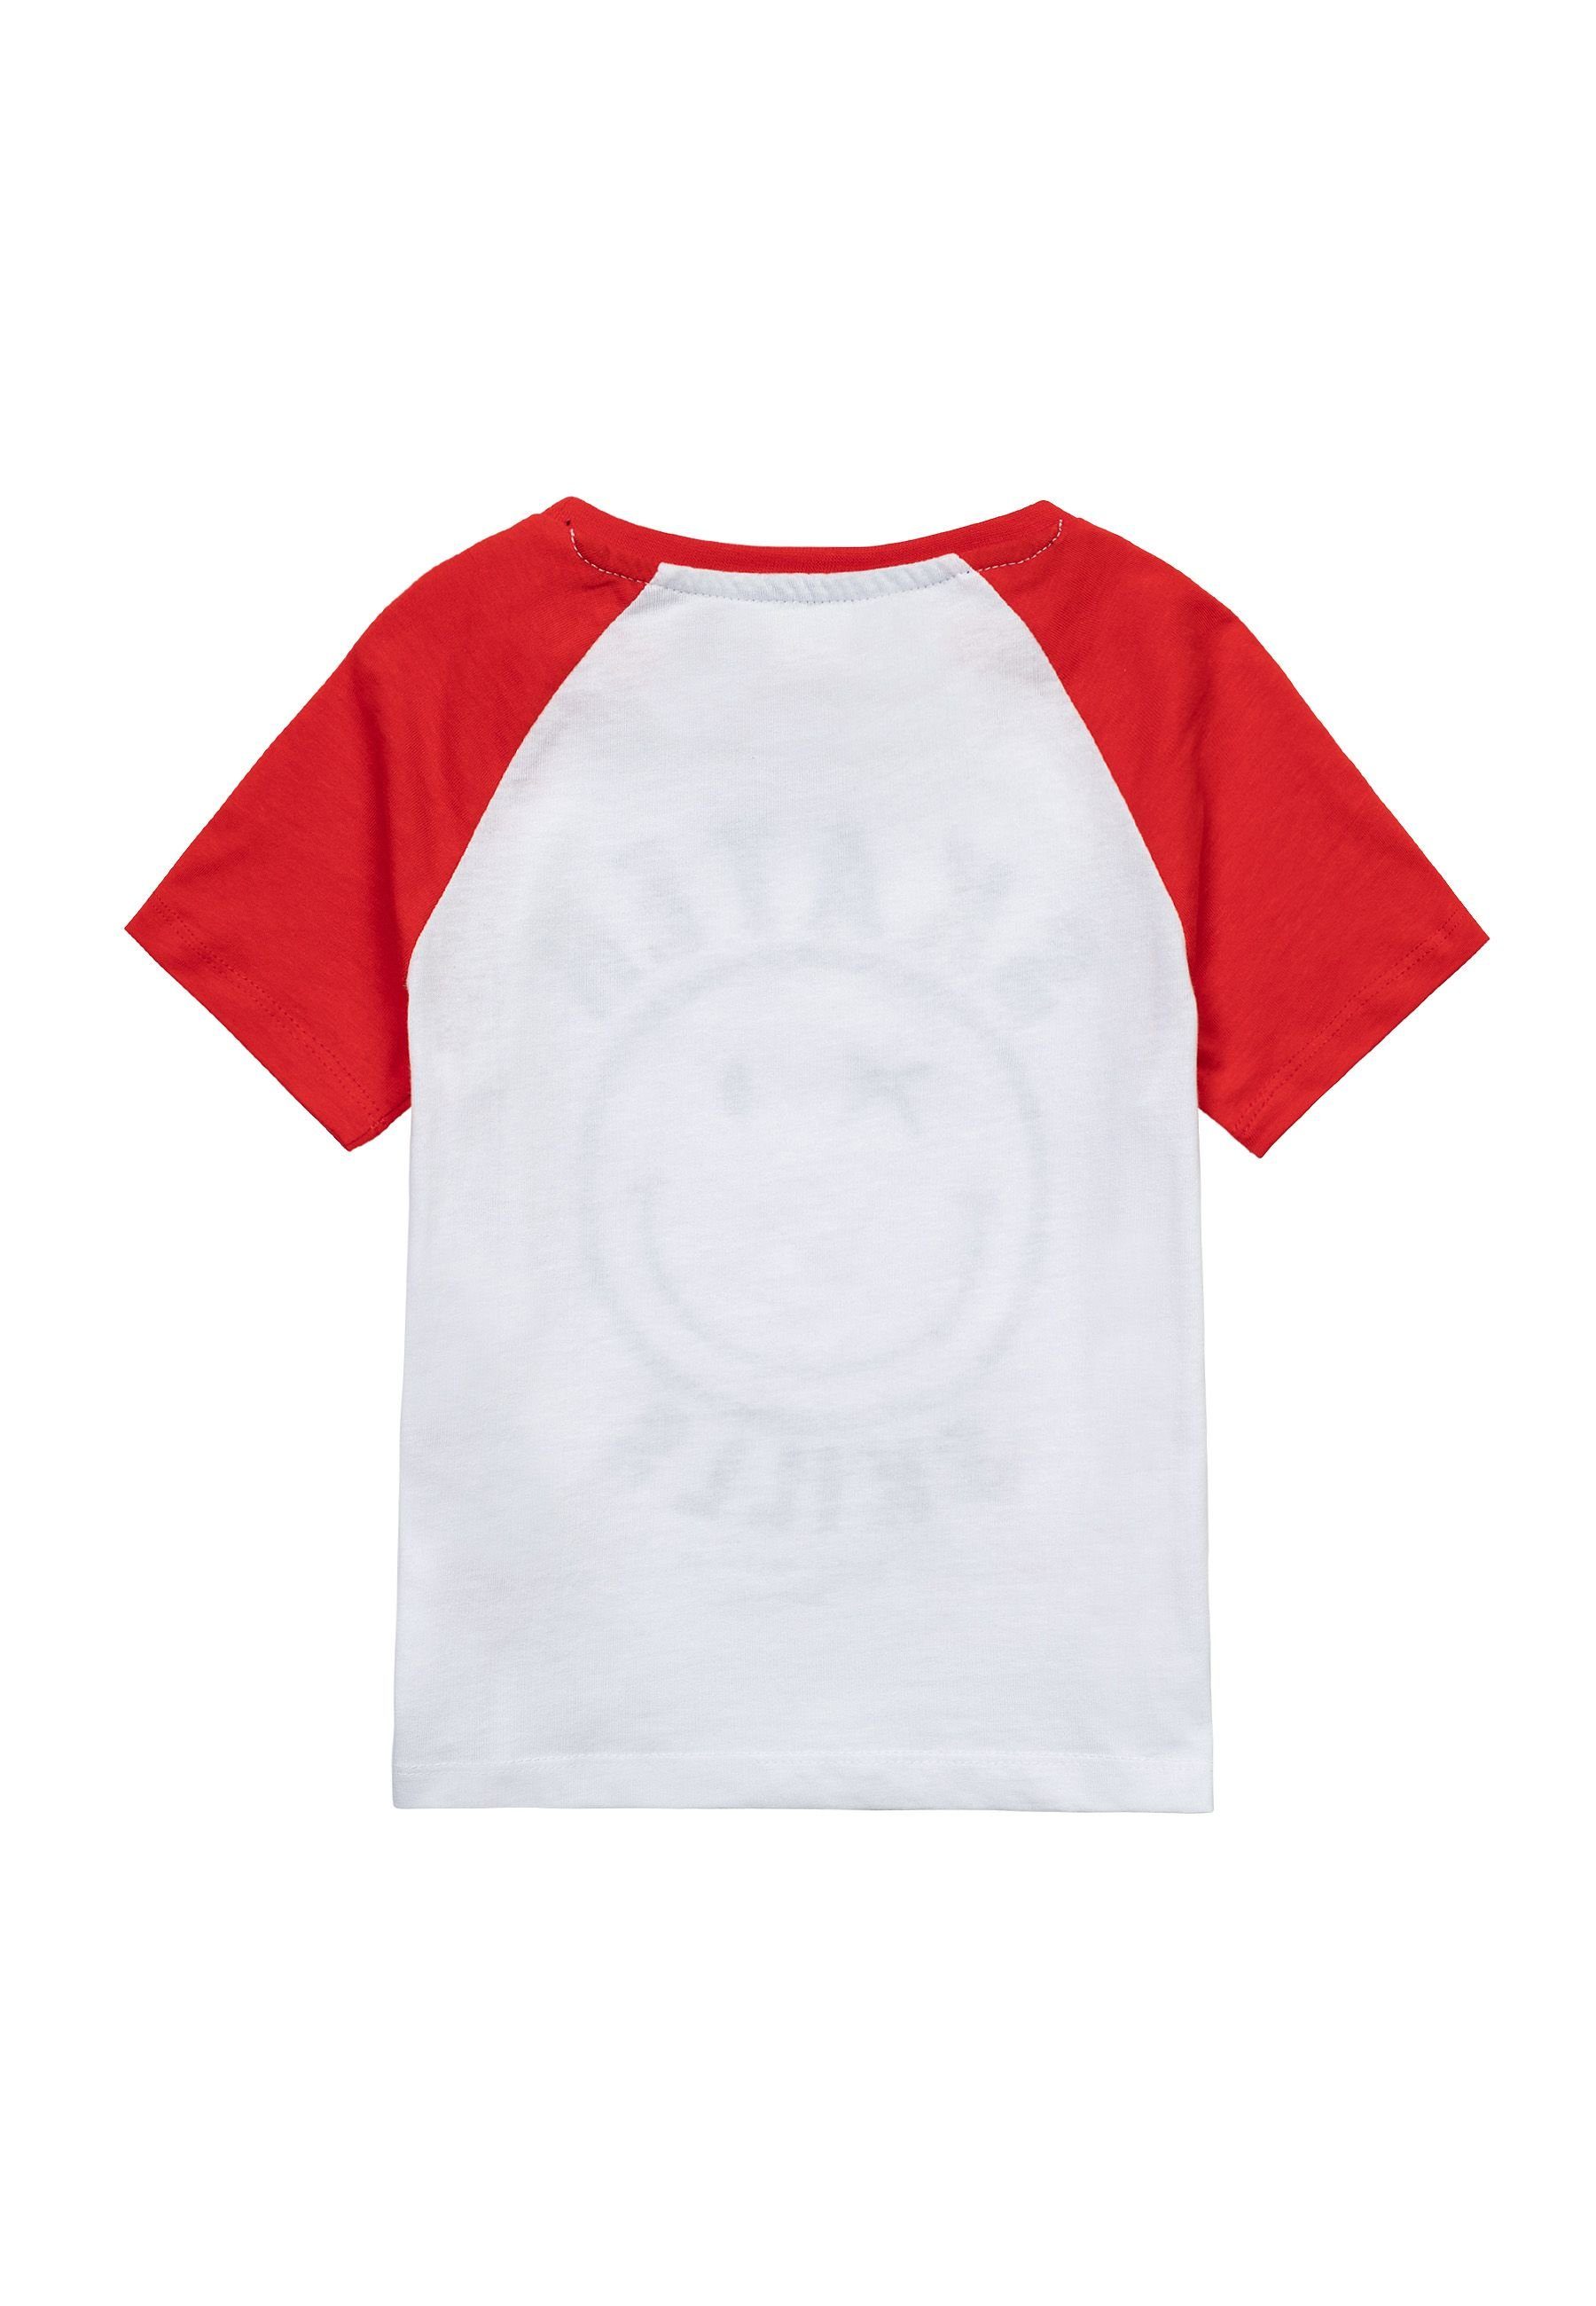 MINOTI T-Shirt Sommer T-Shirt (3y-14y) Weiß bunten Ärmeln mit